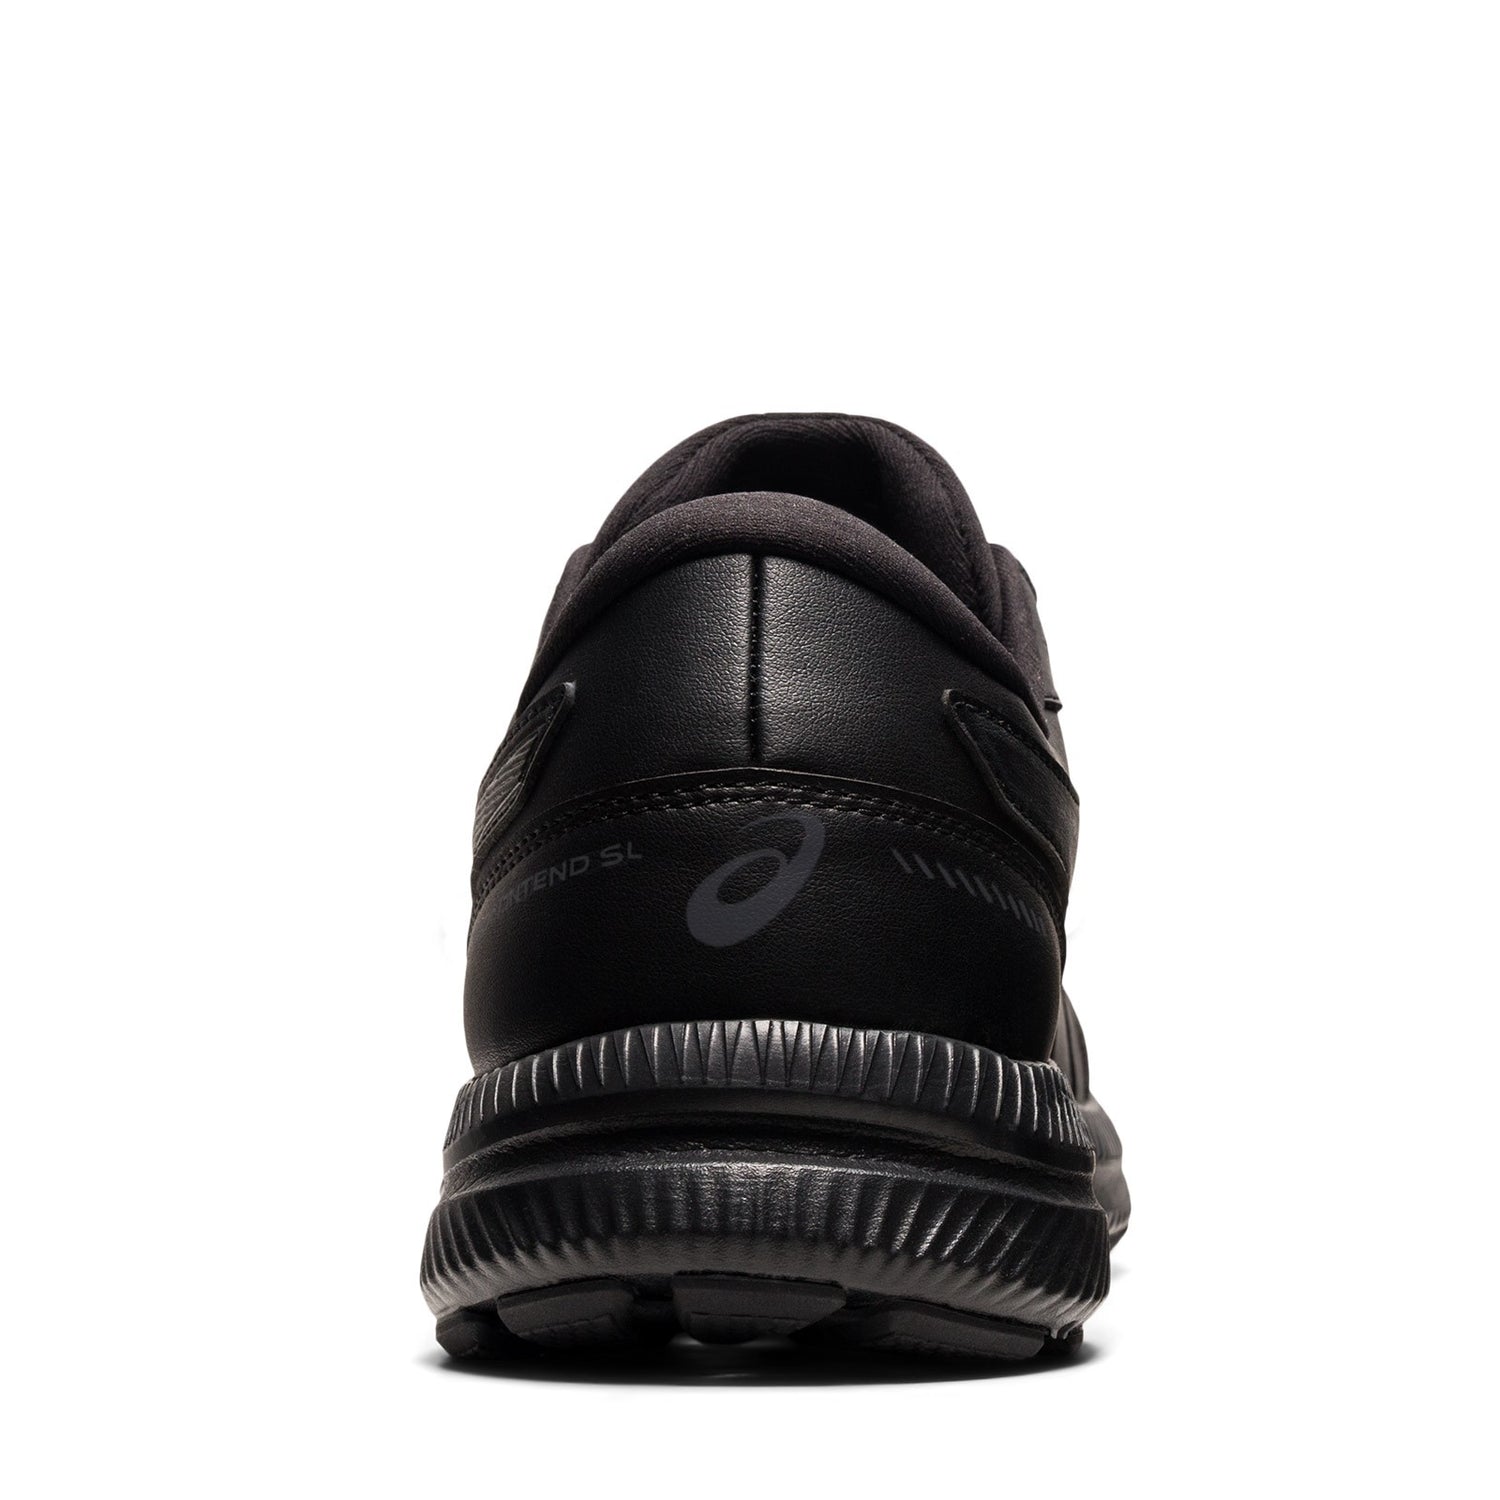 Peltz Shoes  Men's ASICS GEL-Contend Walker - Extra Wide Width BLACK 1131A050.001